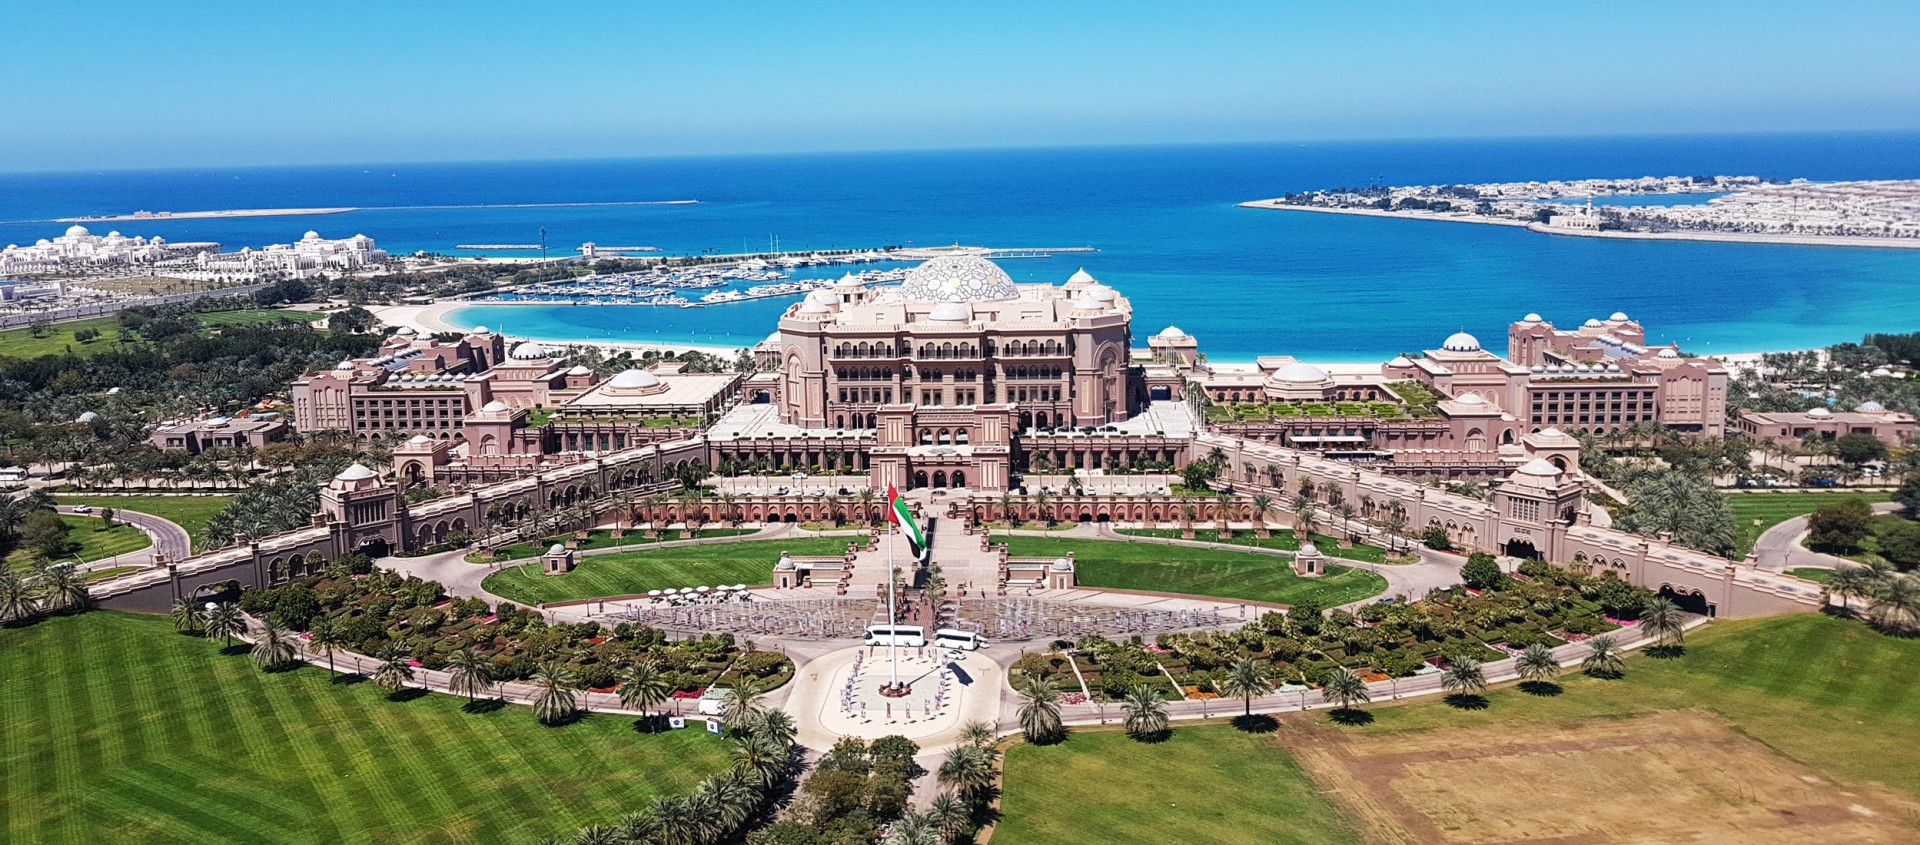 Emirates Palace Hotel in Abu Dhabi - Luxus pur im besten Hotel